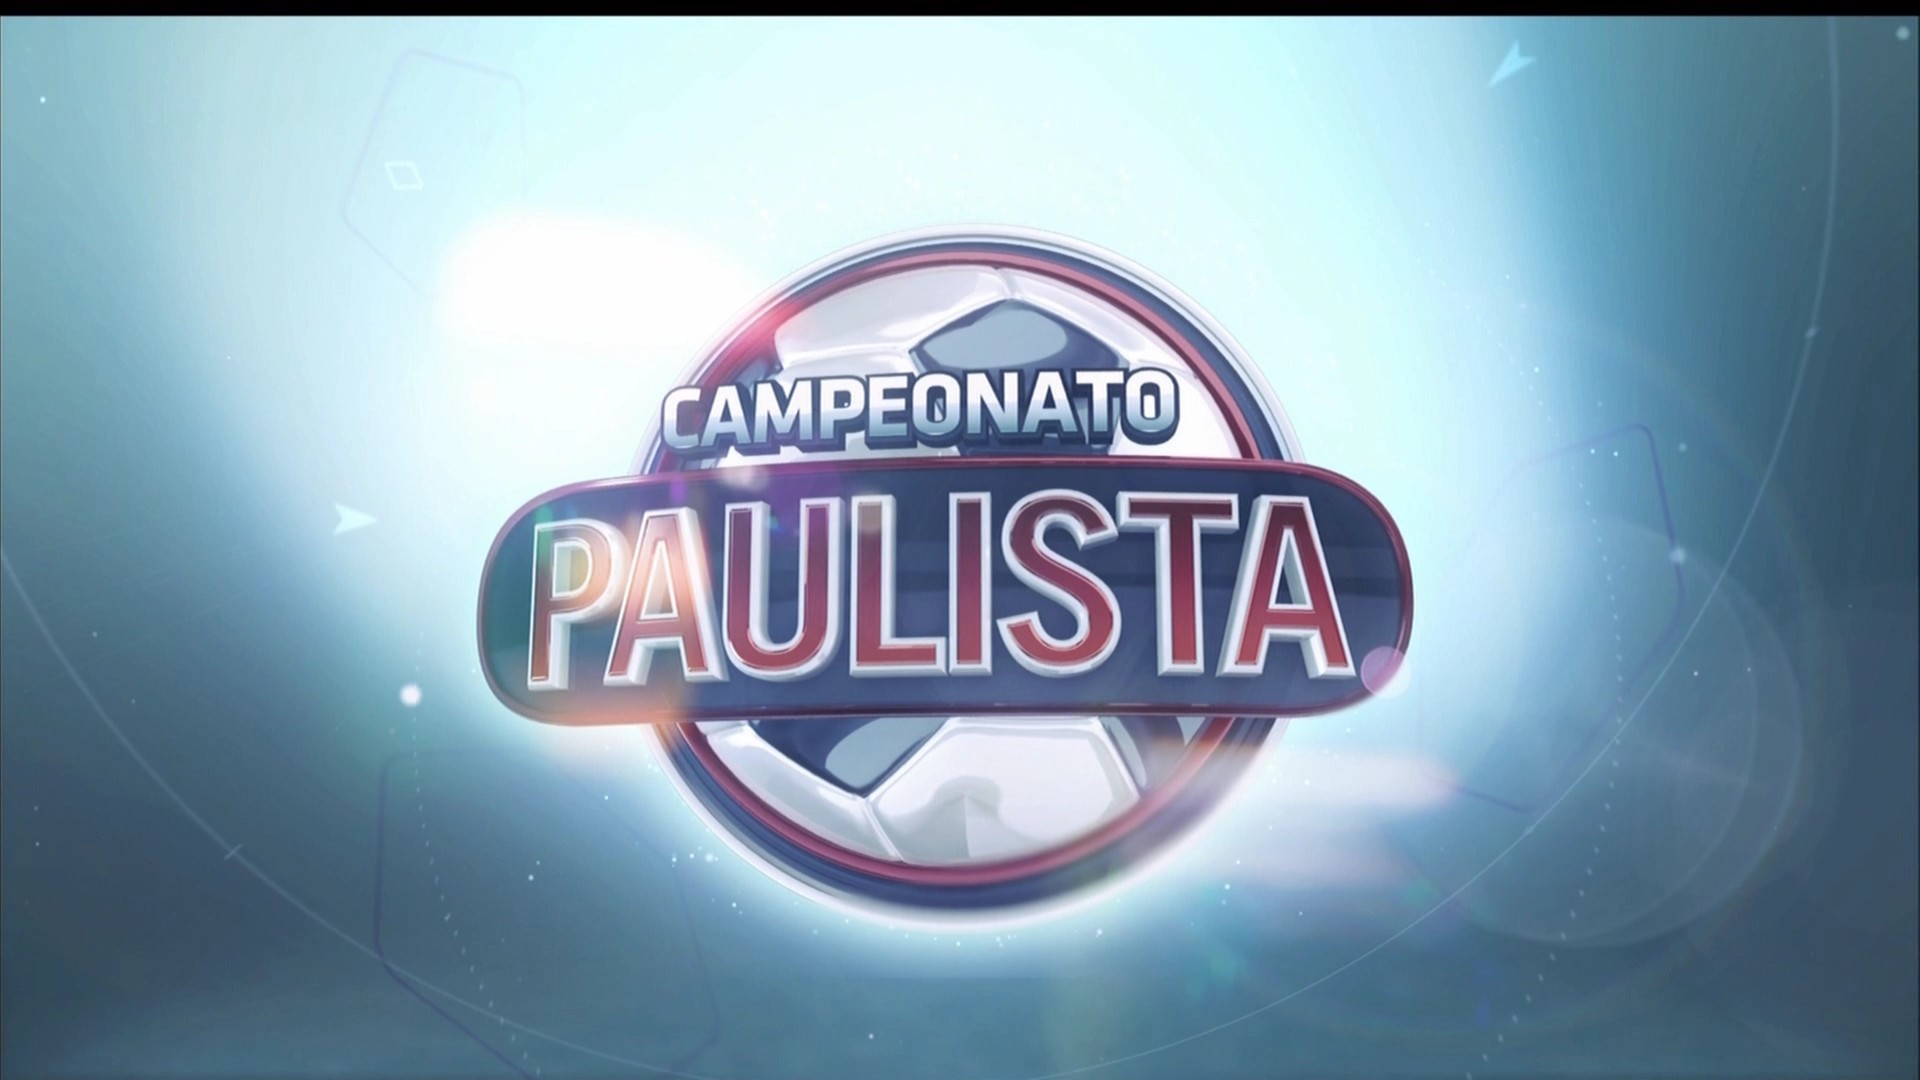 O youtuber do canal "Canal do Fante" conta como assistir campeonato paulista online